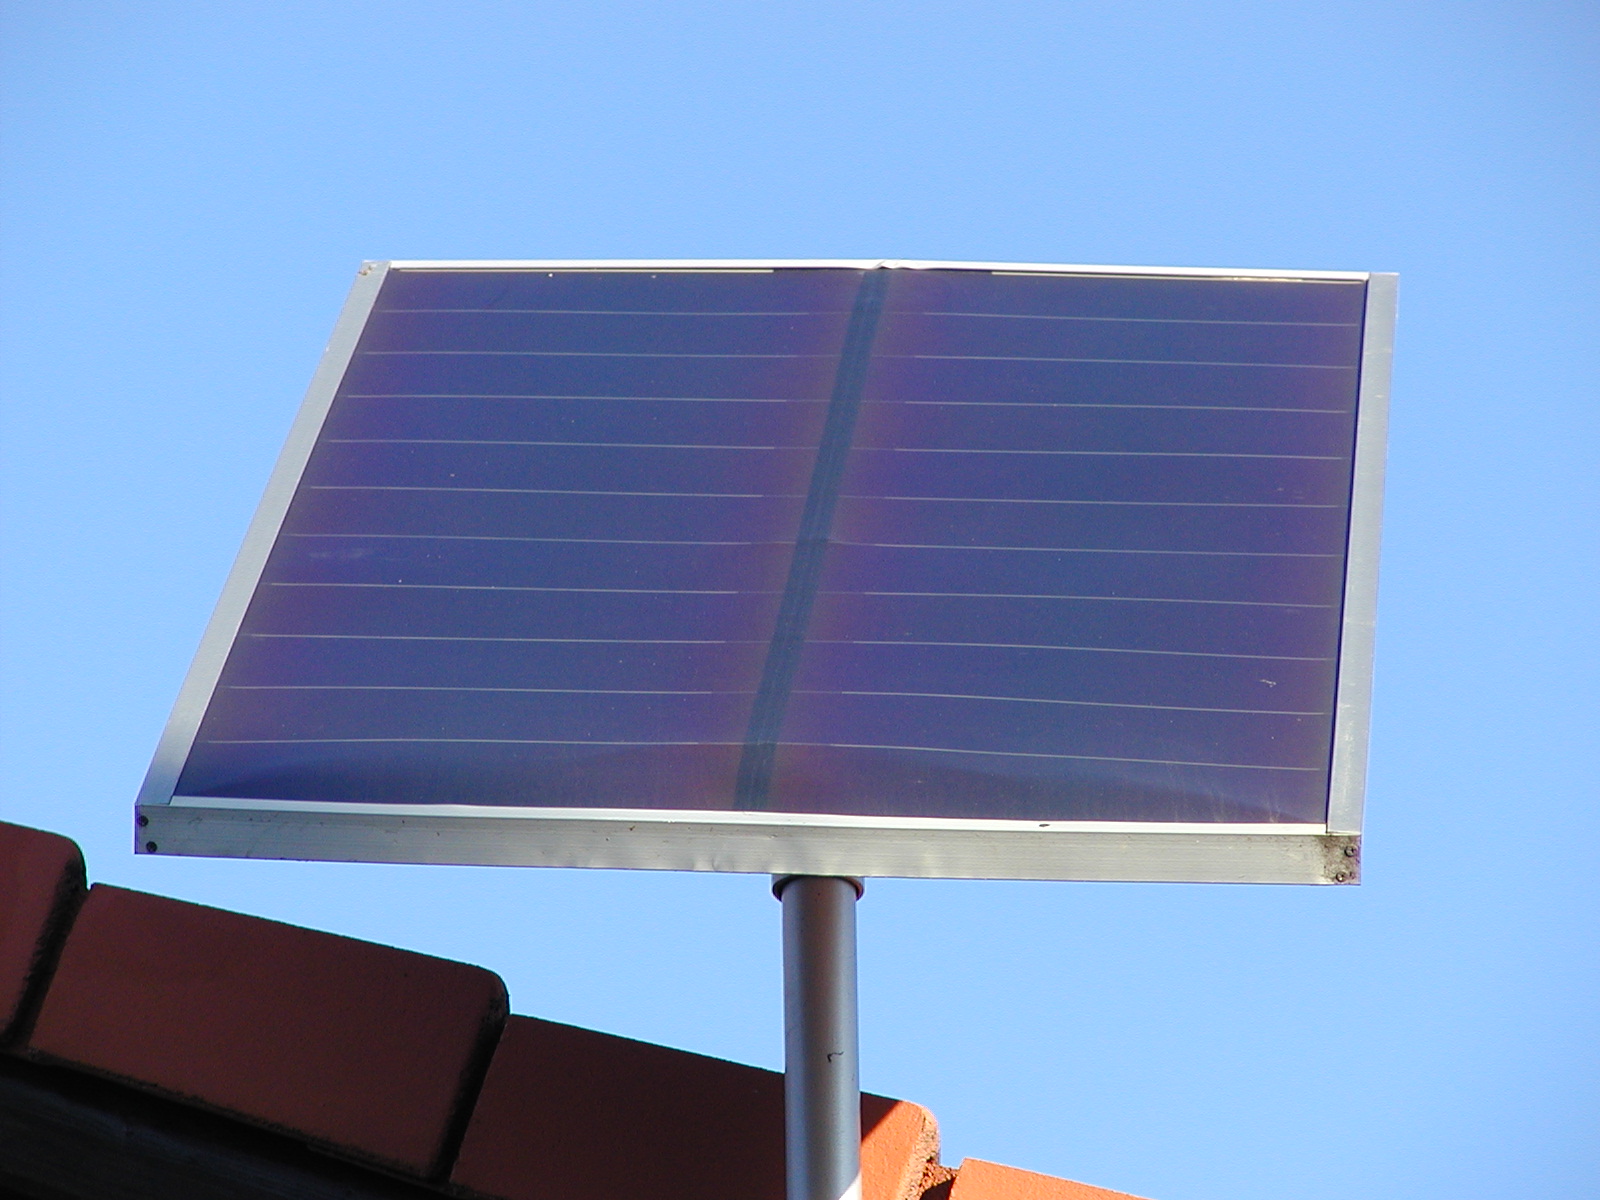 Kann man mit Solarzellen genug Energie für alle erzeugen?